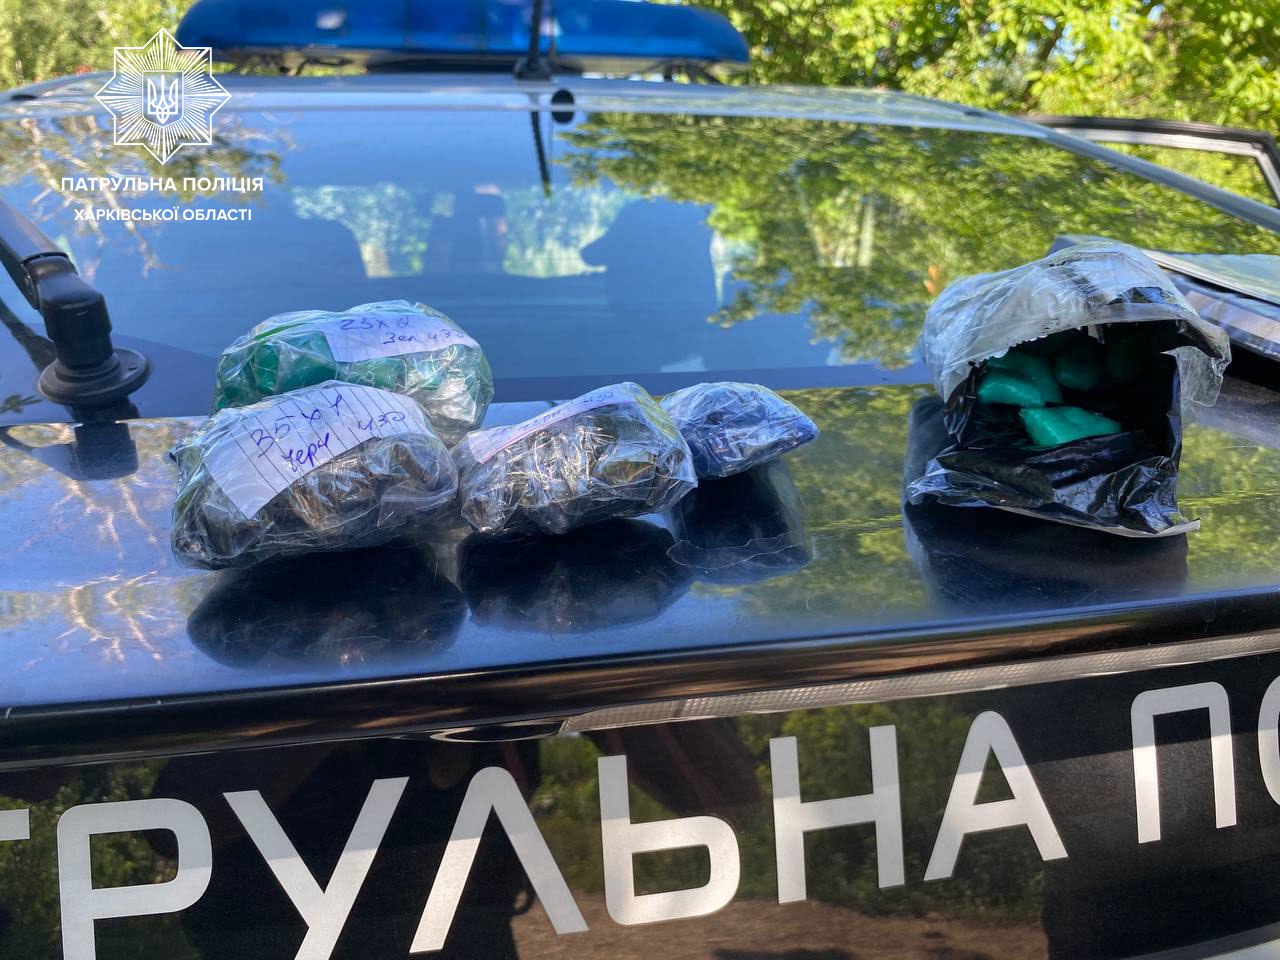 Харківські патрульні затримали «закладчика» з партією наркотиків